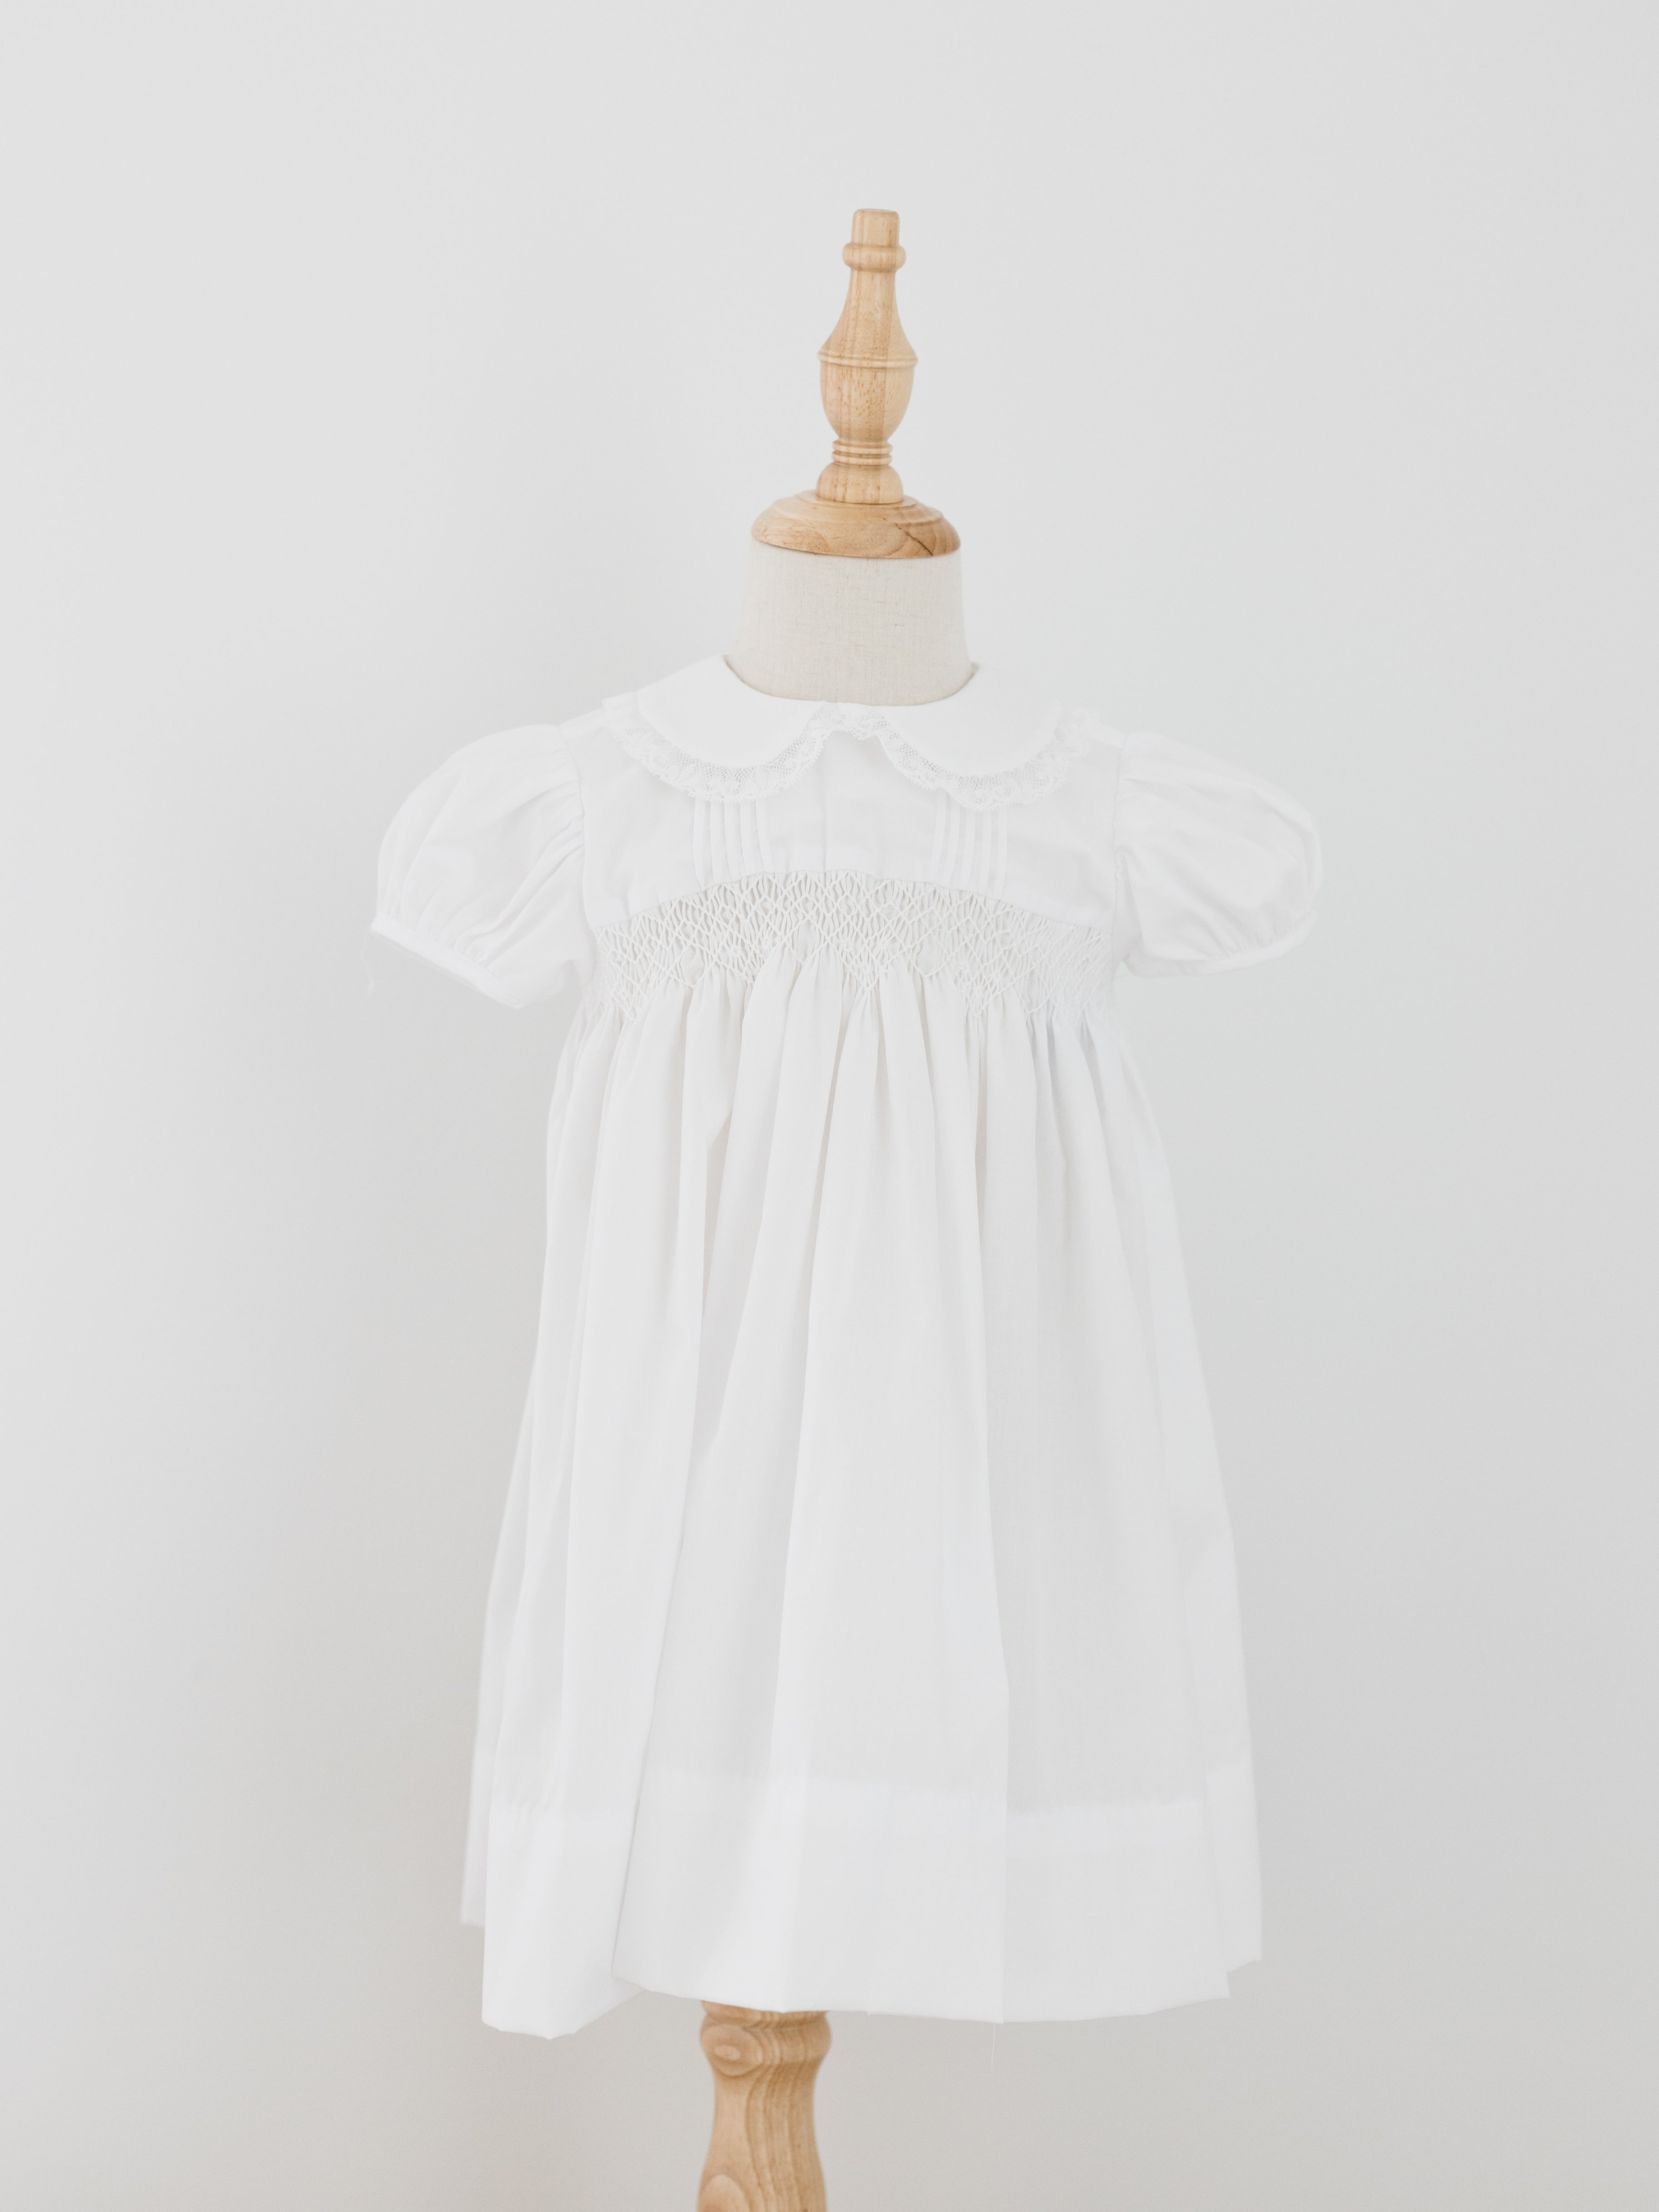 Finley Dress - All White Smocked